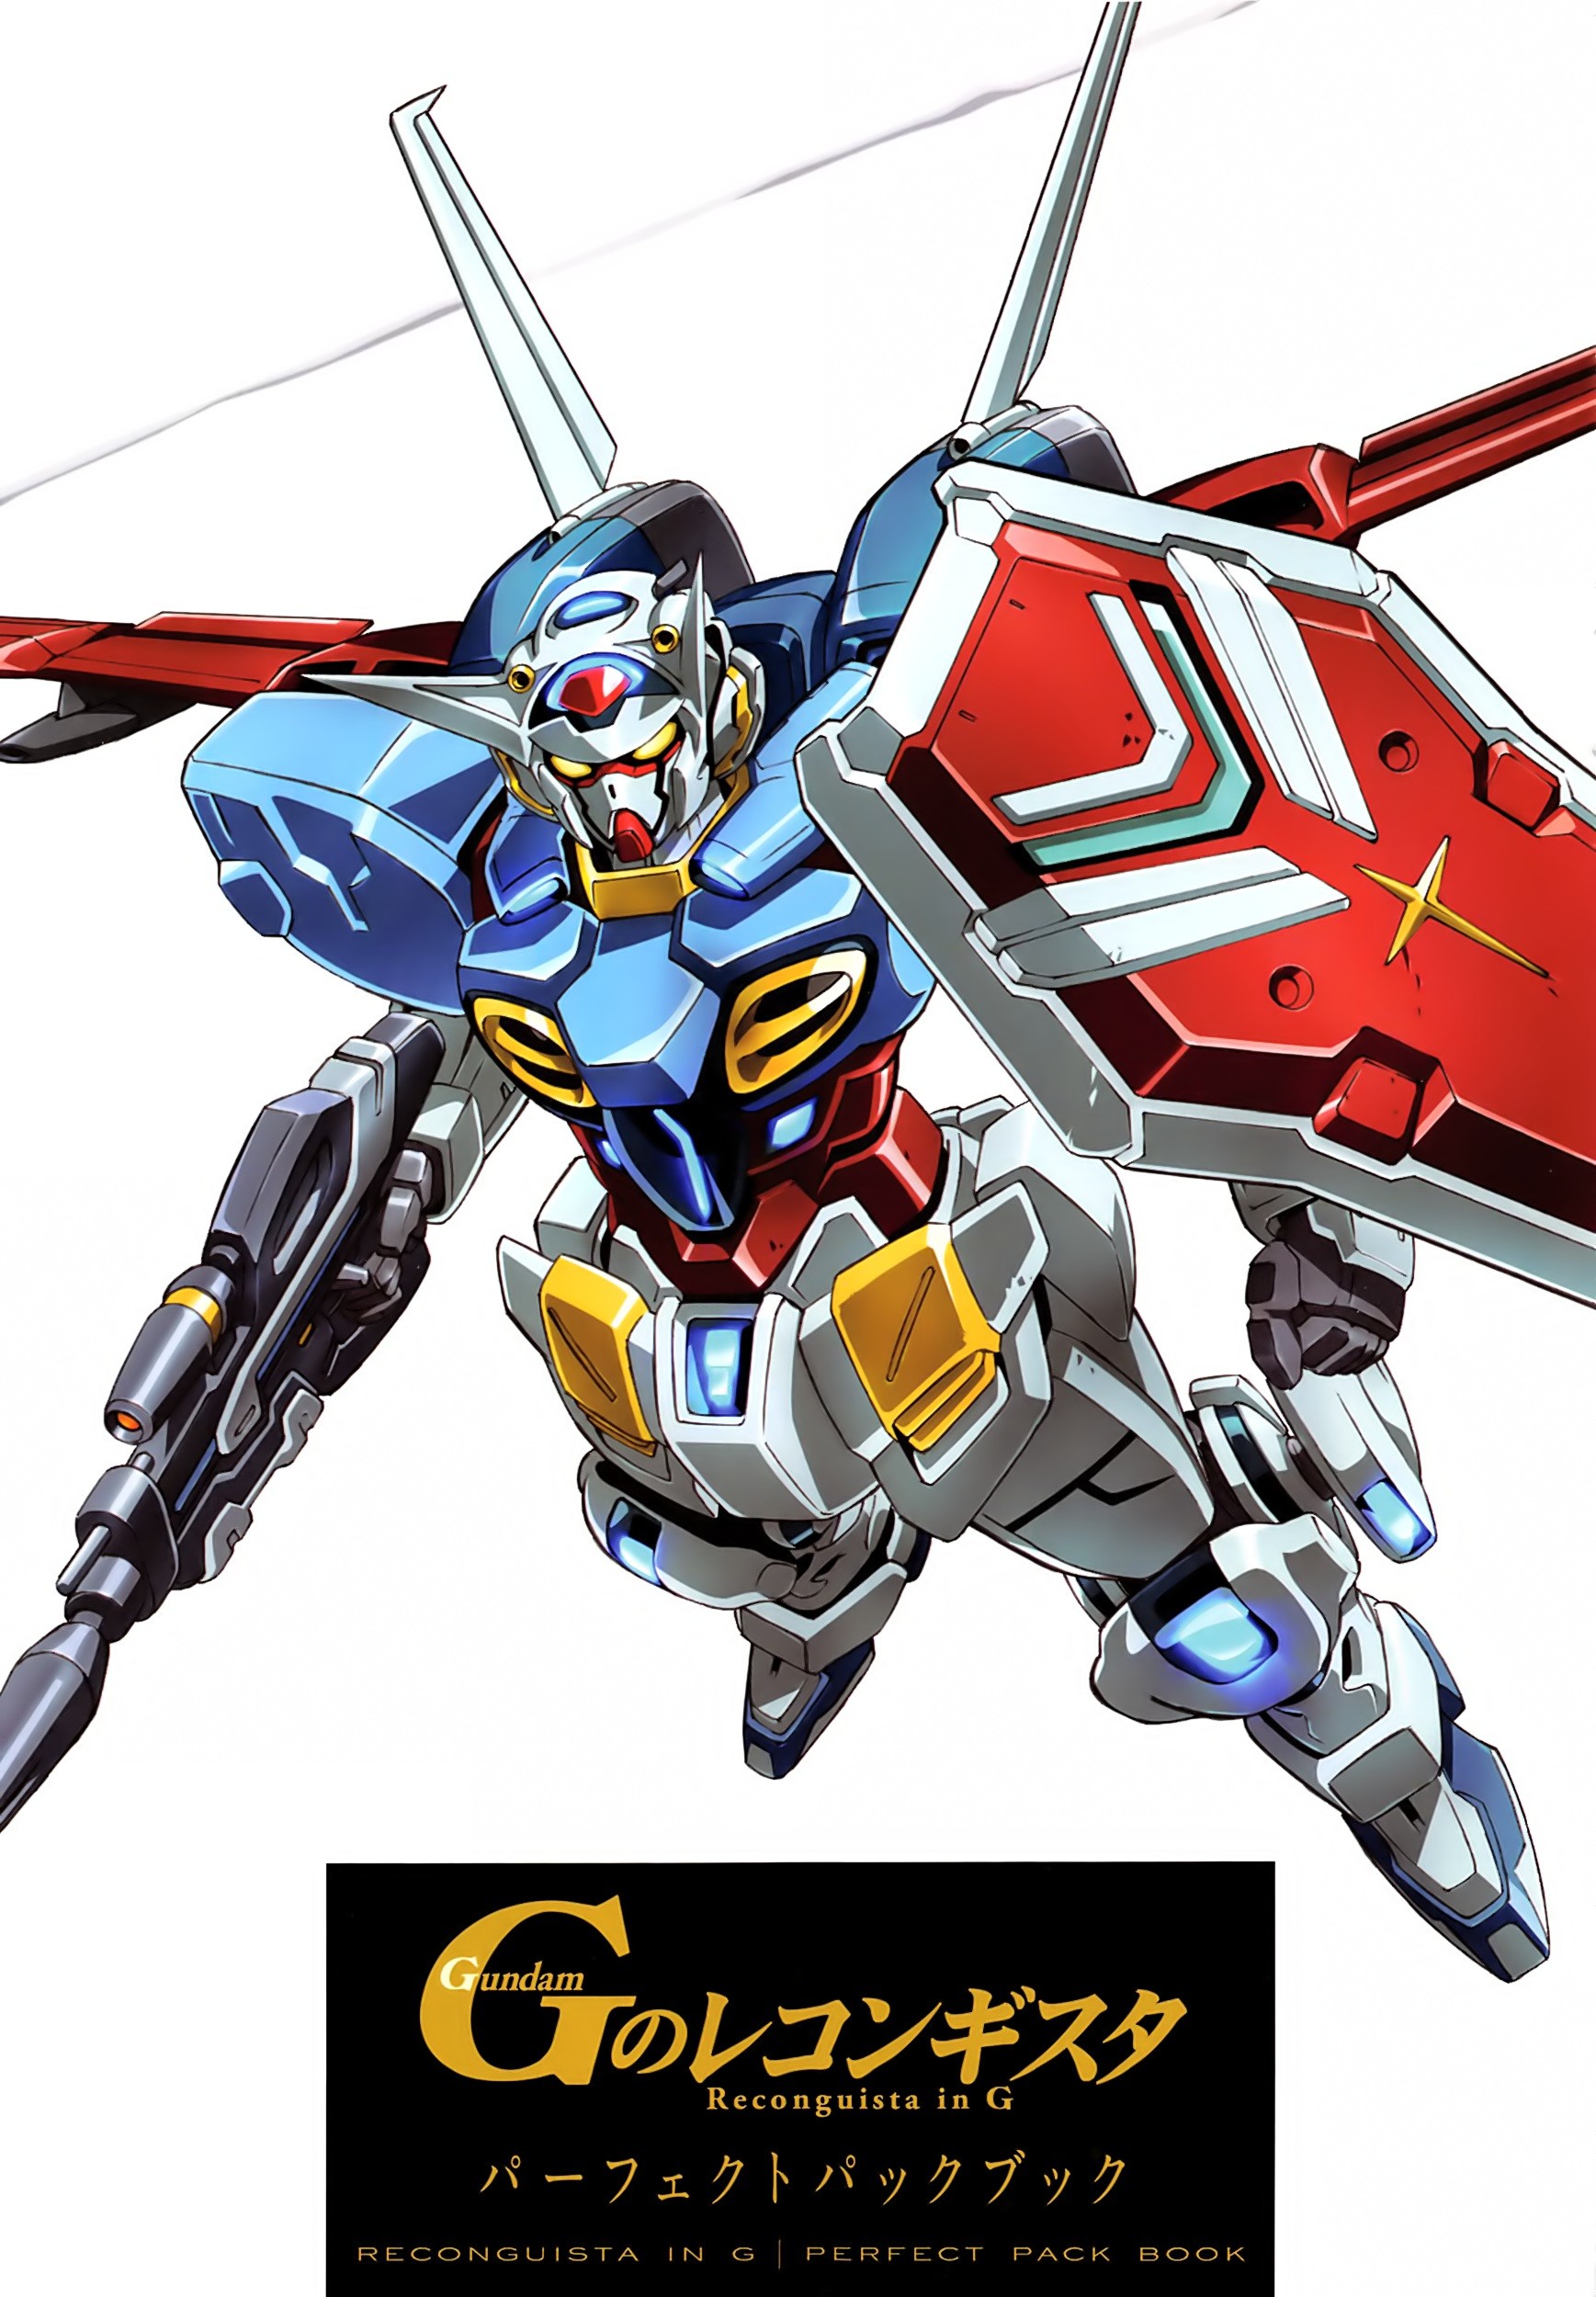 1737x2500 Gundam: G no Reconguista download Gundam: G no Reconguista image